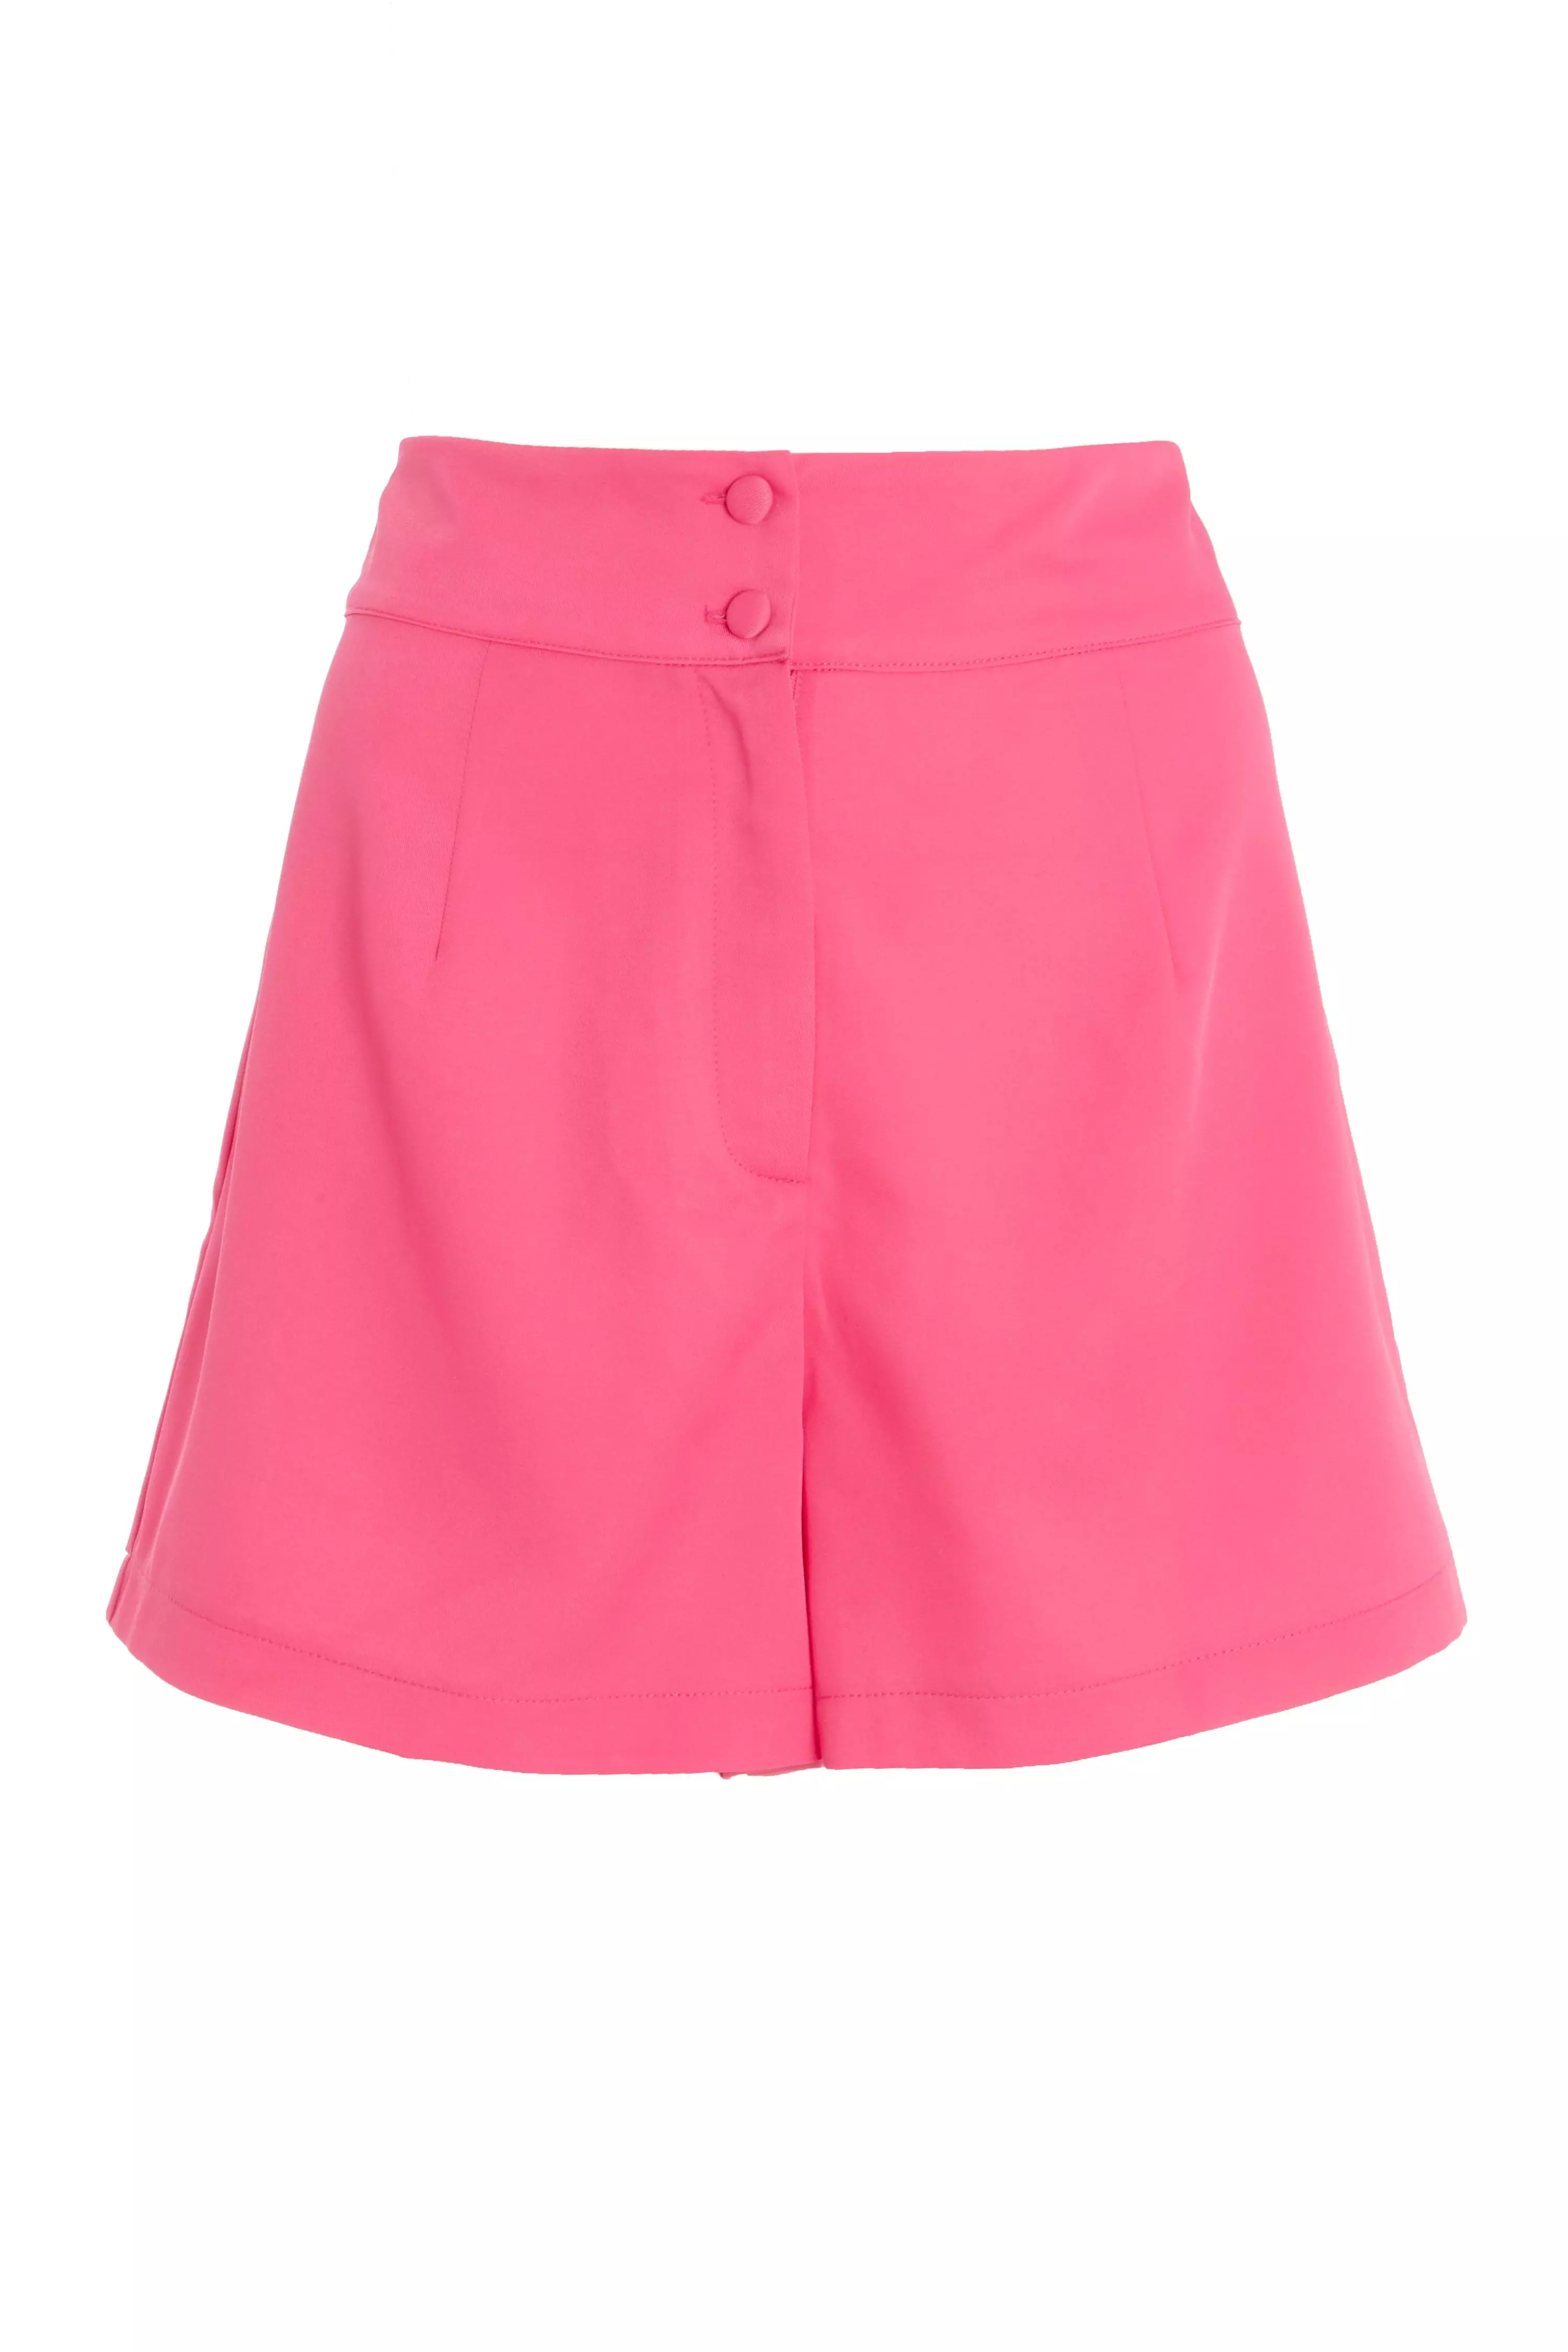 Pink High Waist Shorts